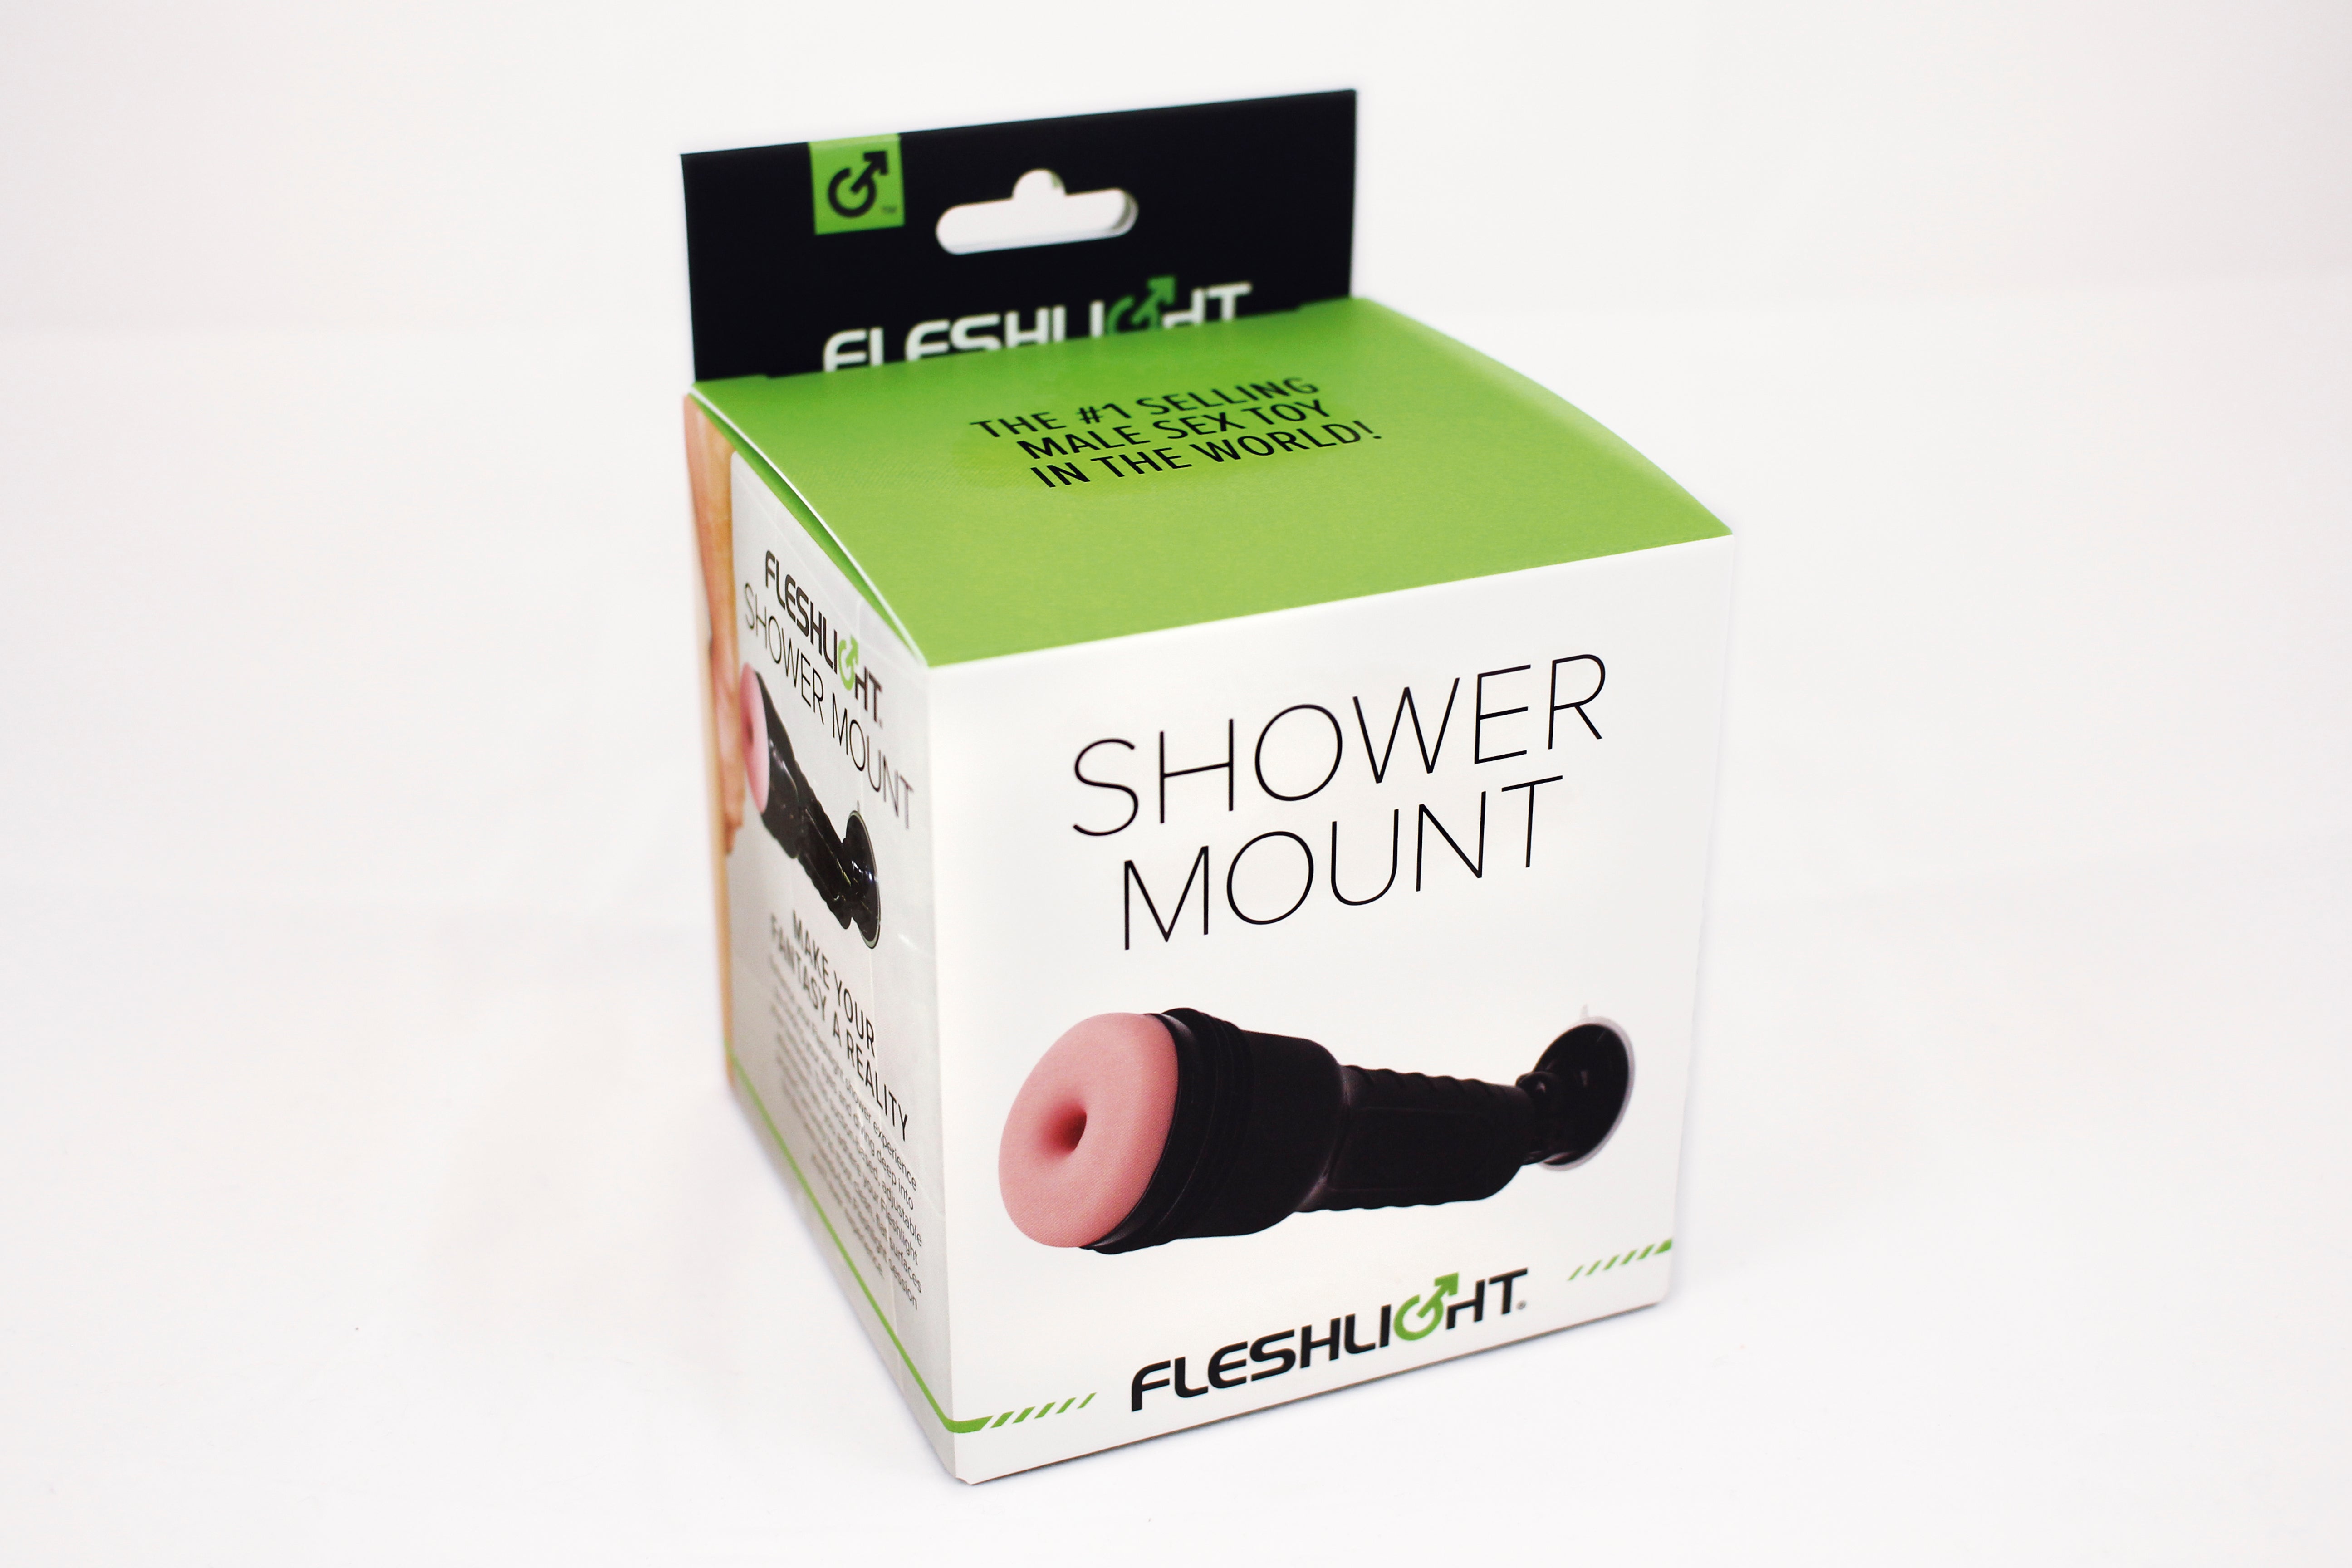 Fleshlight shower mount packaging